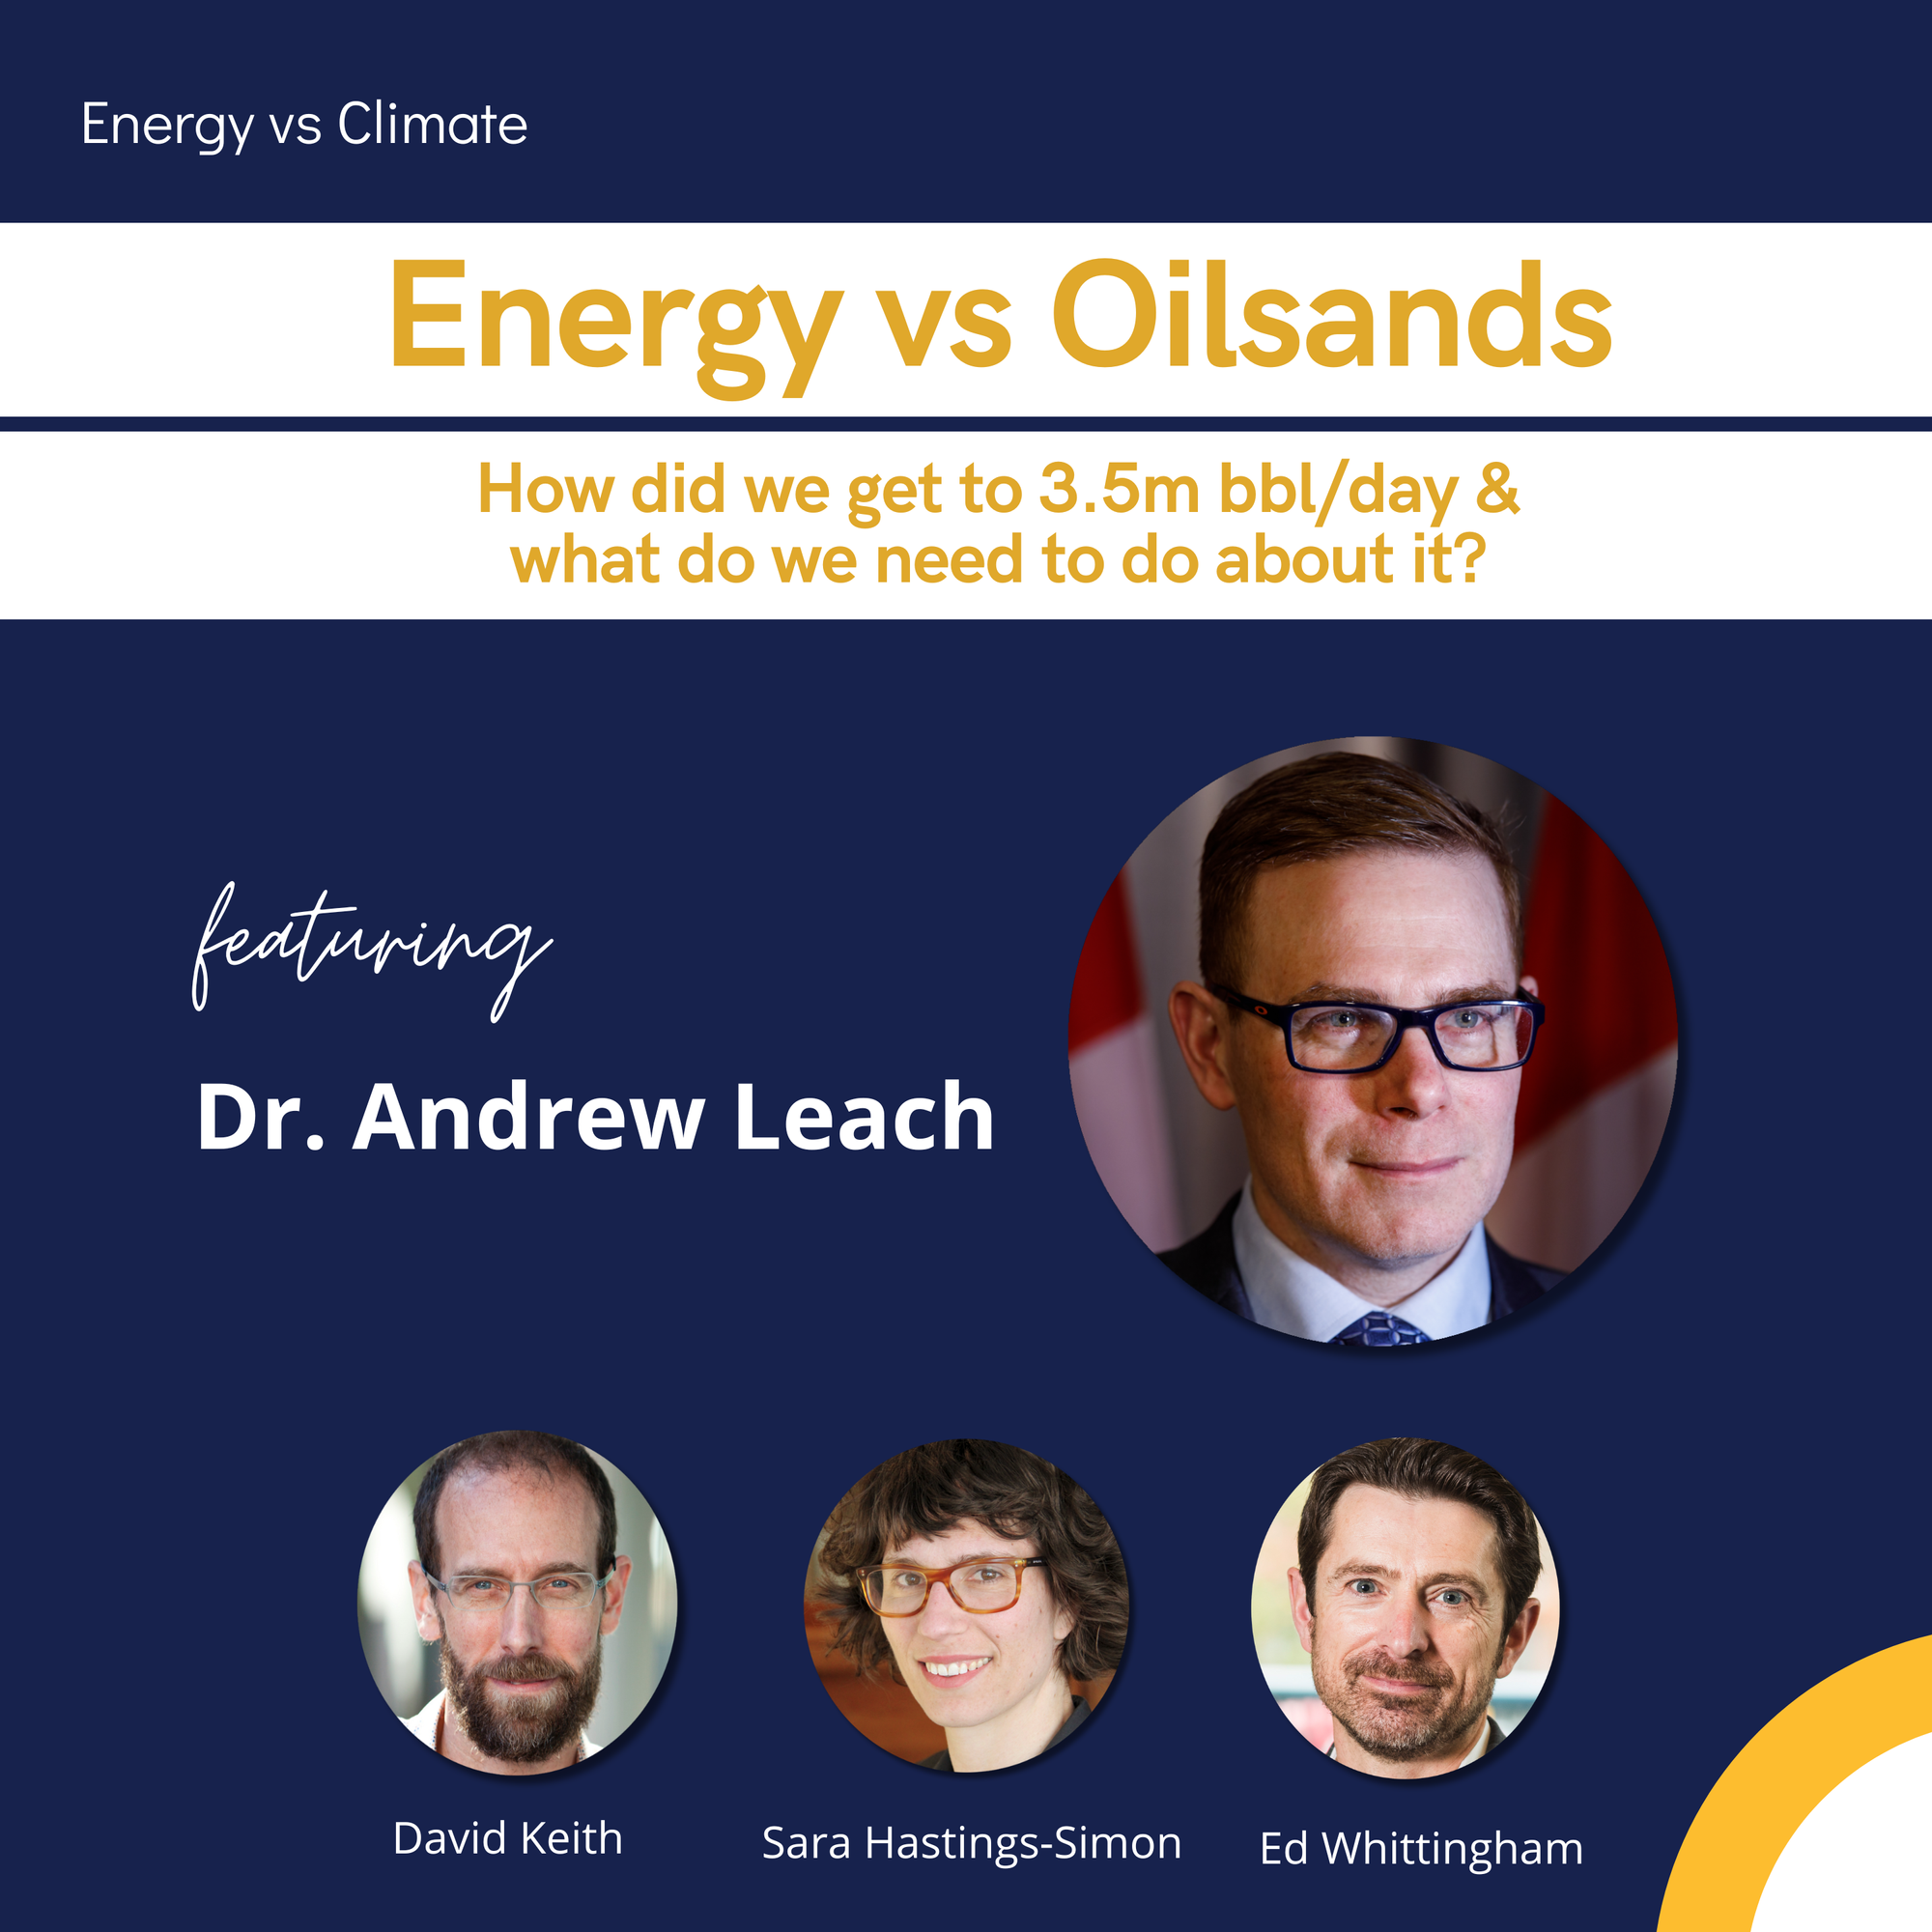 Energy vs Oilsands